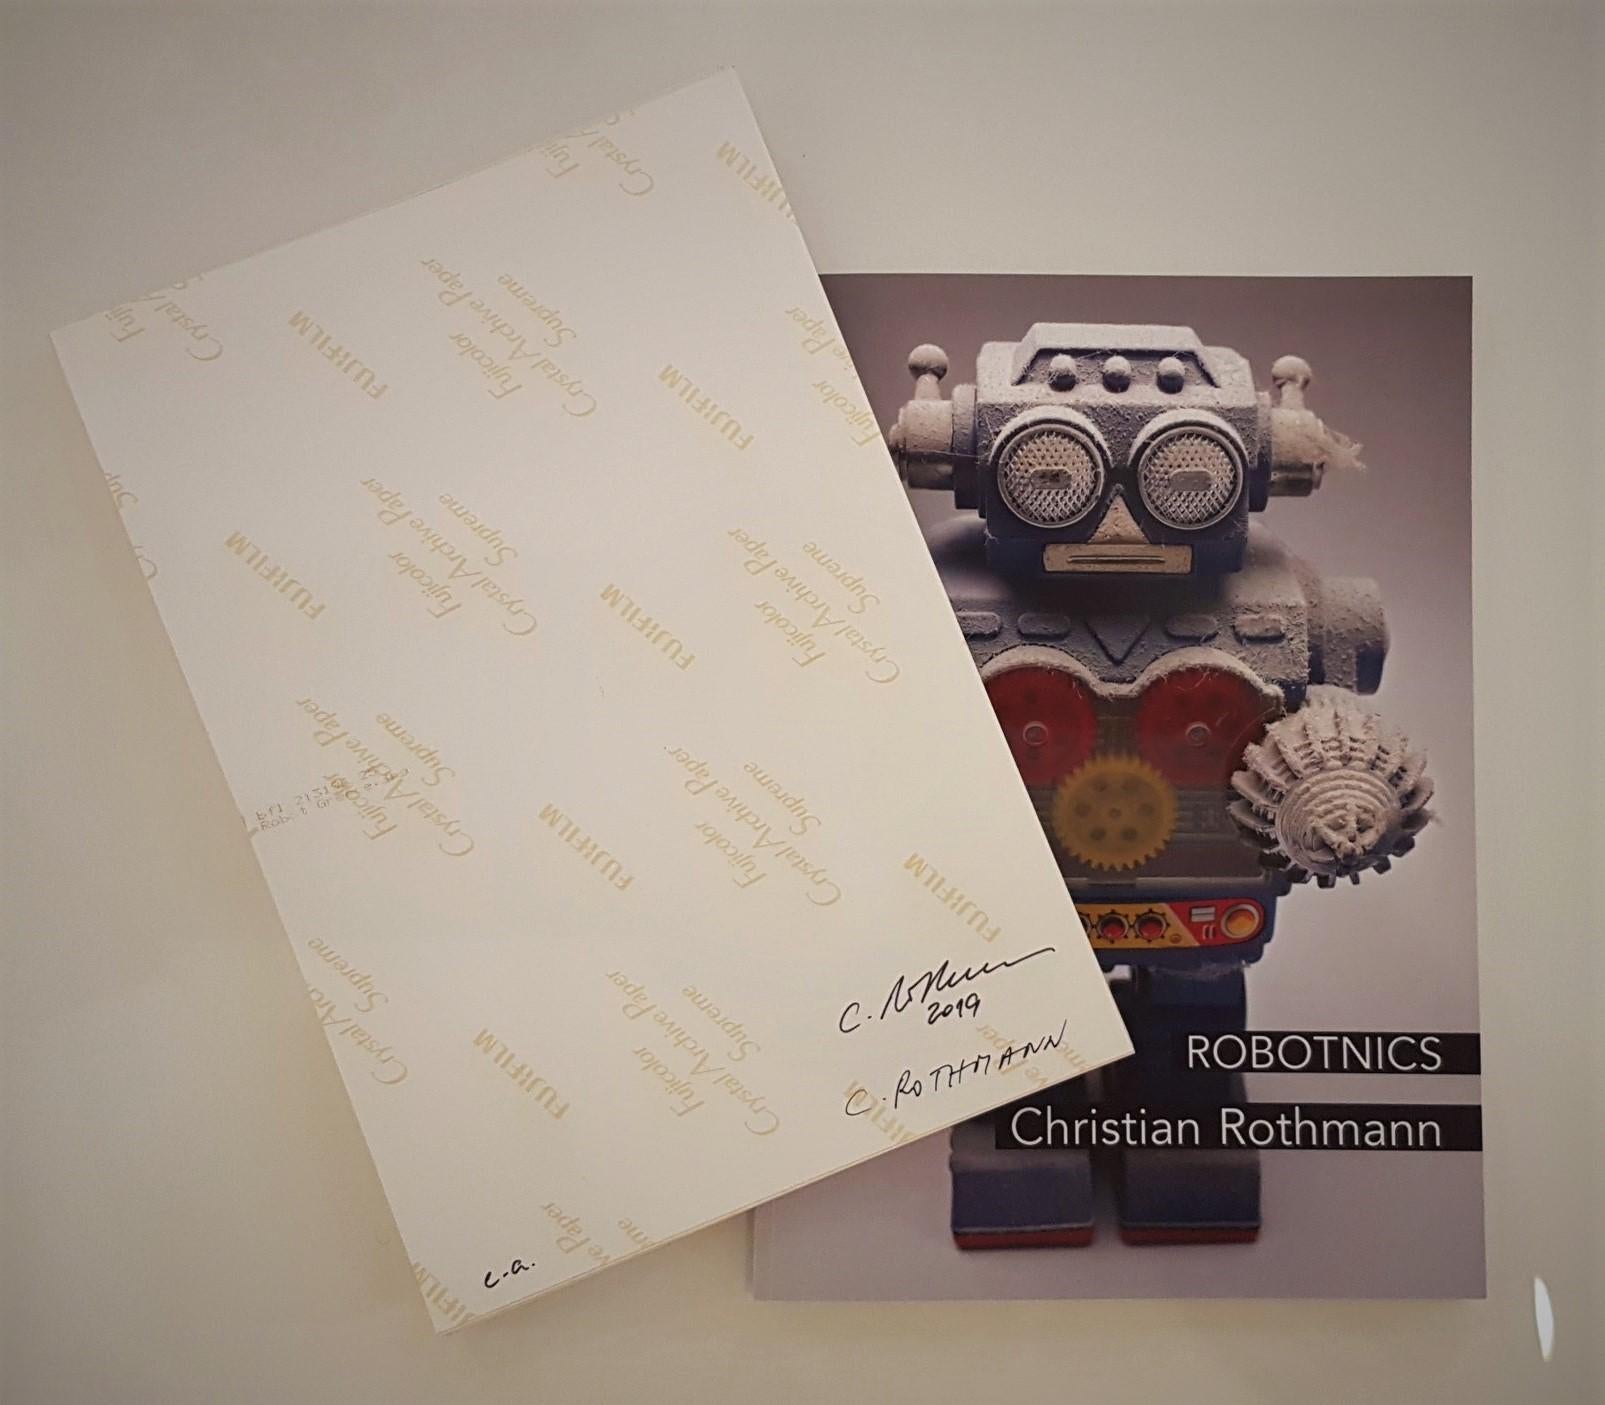 Christian Rothmann
Série ROBOTNICS
C-Print
2019
Edition S (Edition de 10)
12 x 8,3 pouces (30,5 x 21 cm)
Signé, daté et numéroté au verso


D'autres tailles d'édition sont disponibles :
- Edition M (Edition de 6)  35.4 x 23.6 pouces (90 x 60 cm)
-